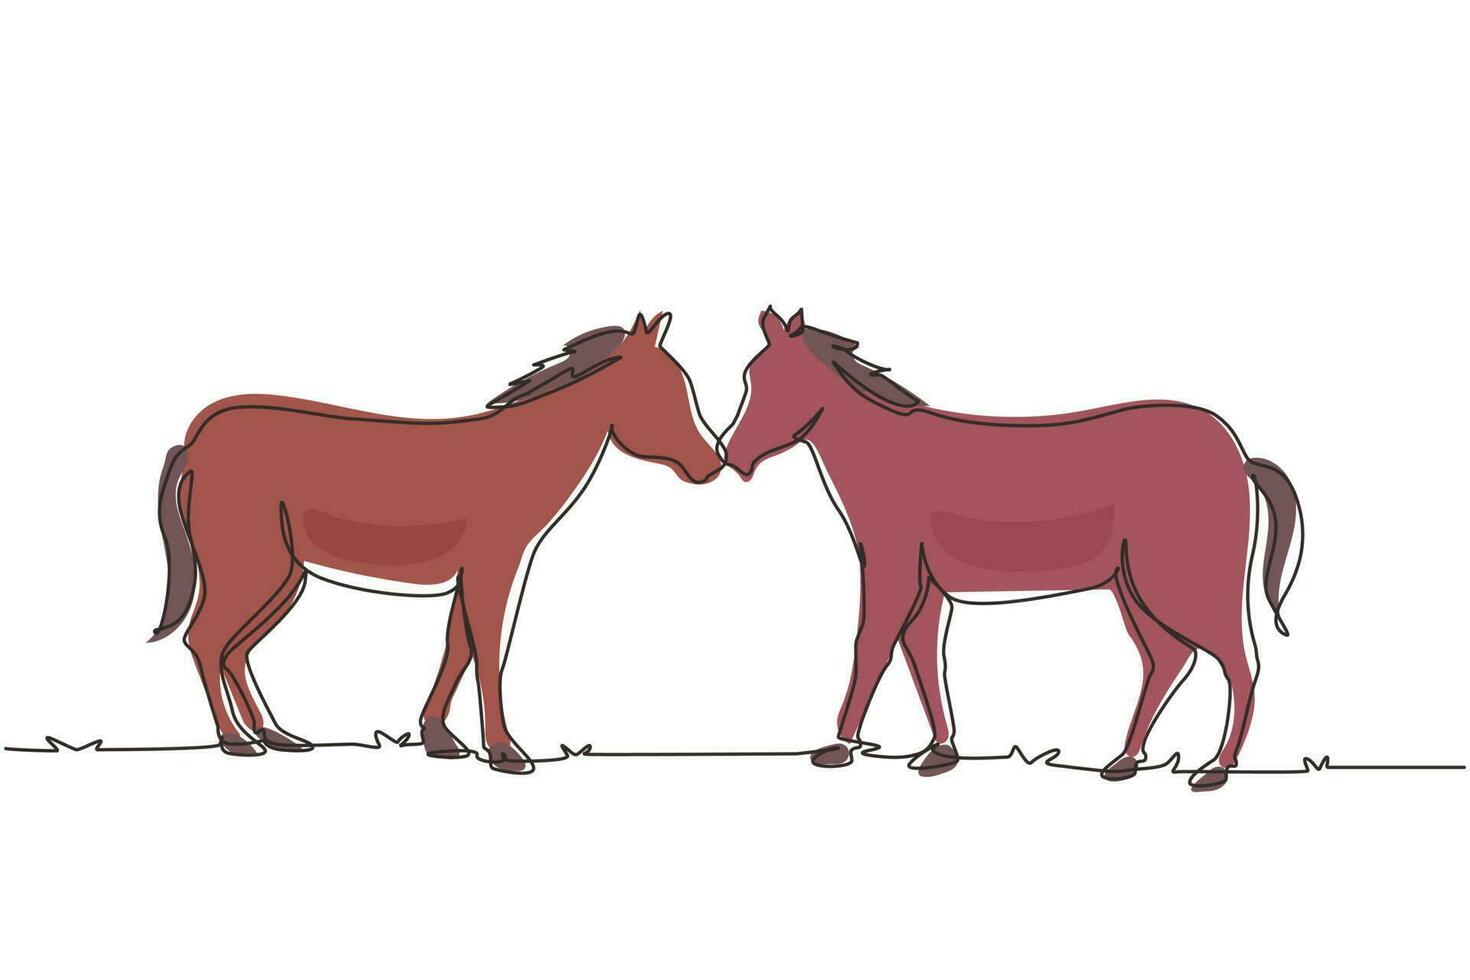 única linha contínua desenhando dois cavalos caminha graciosamente frente a frente. Mustang selvagem galopa na natureza livre. mascote animal para rancho de cavalos. ilustração em vetor design gráfico de desenho gráfico de uma linha dinâmica